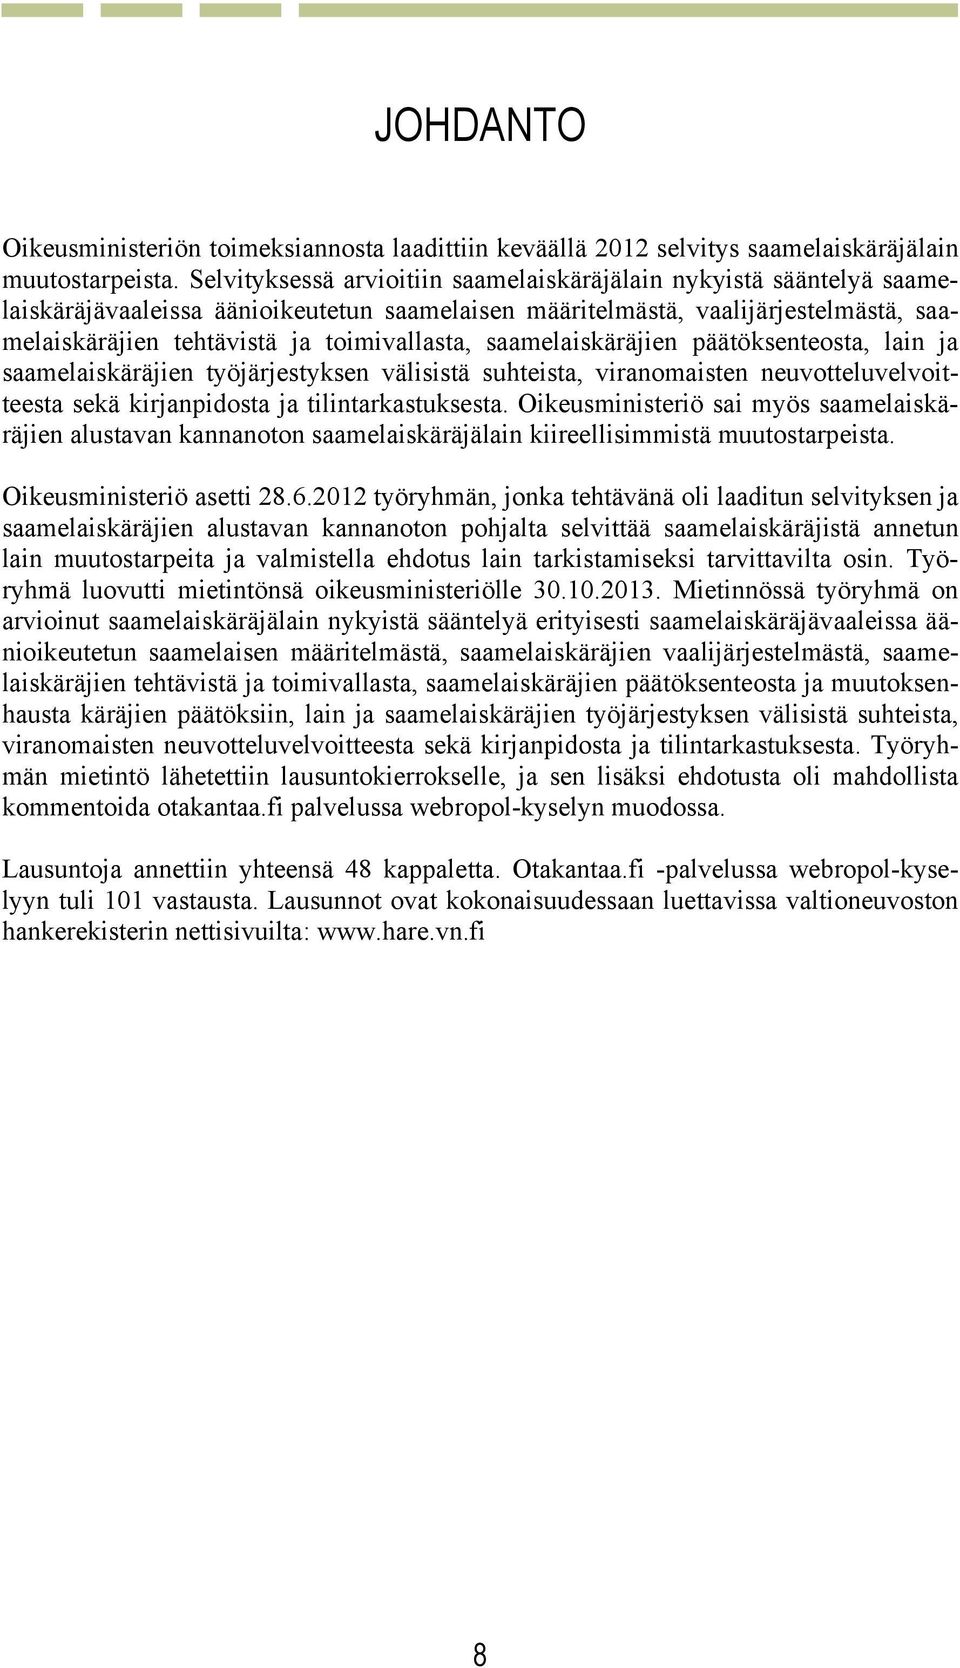 saamelaiskäräjien päätöksenteosta, lain ja saamelaiskäräjien työjärjestyksen välisistä suhteista, viranomaisten neuvotteluvelvoitteesta sekä kirjanpidosta ja tilintarkastuksesta.